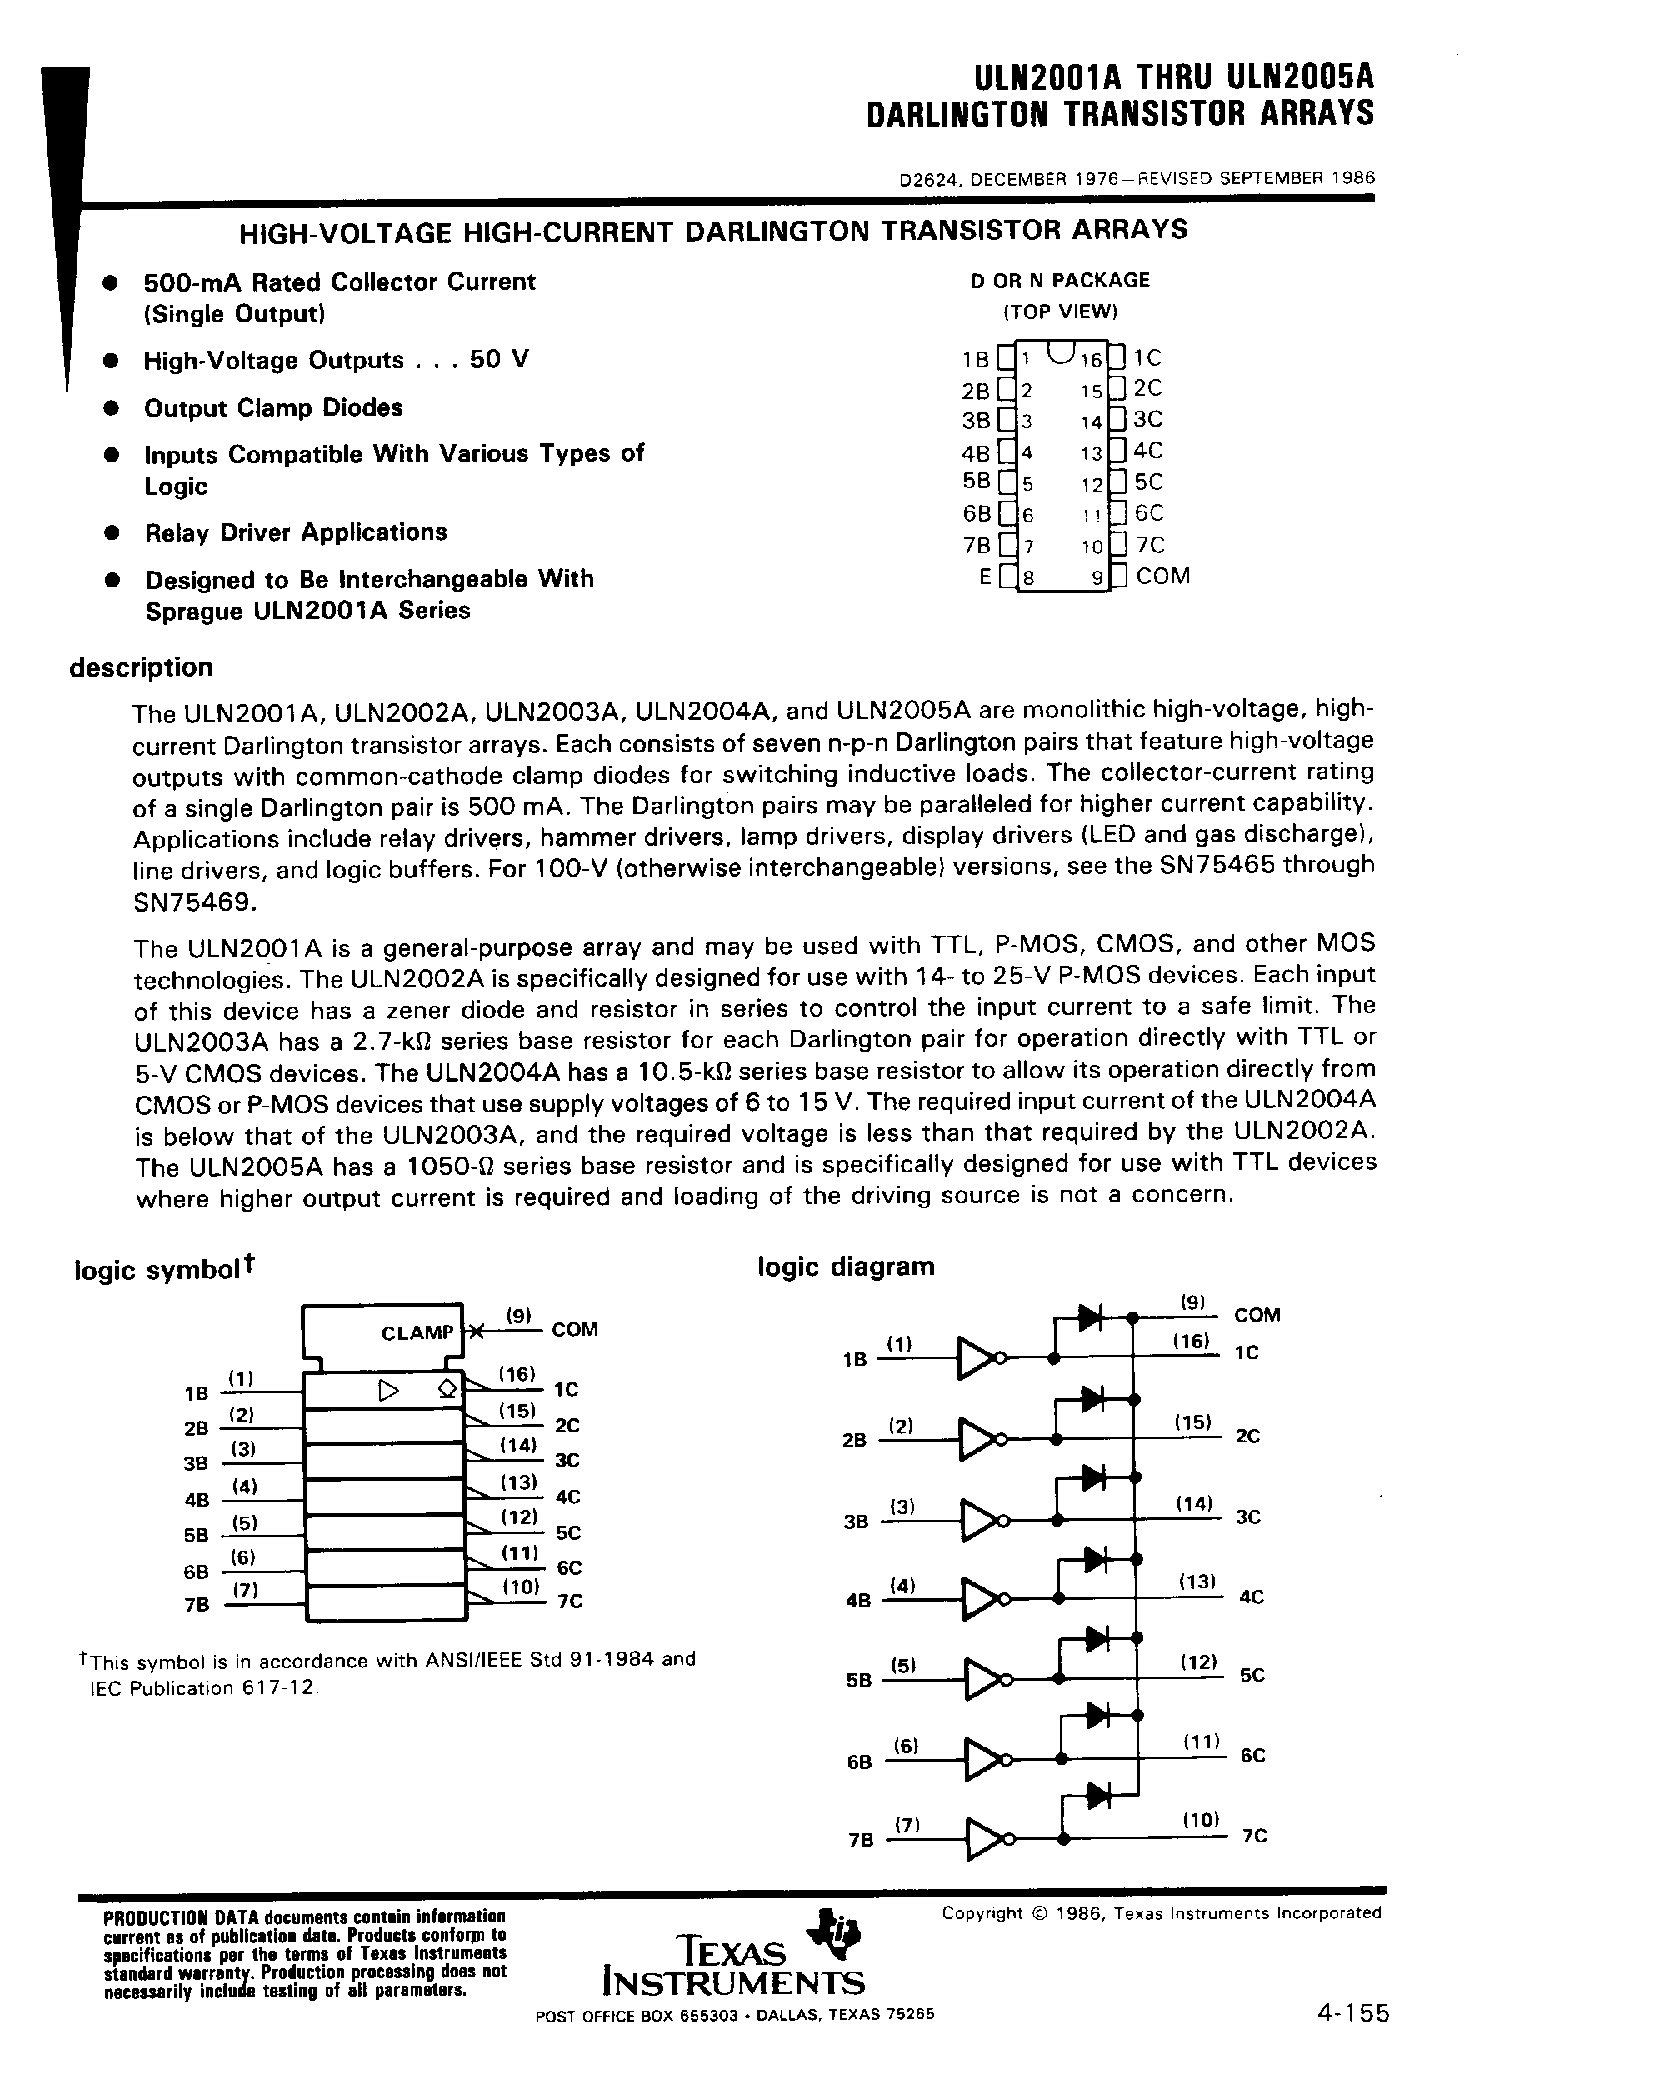 Даташит ULN2005A - (ULN2001A - ULN2005A) Darlington Transistor Arrays страница 1